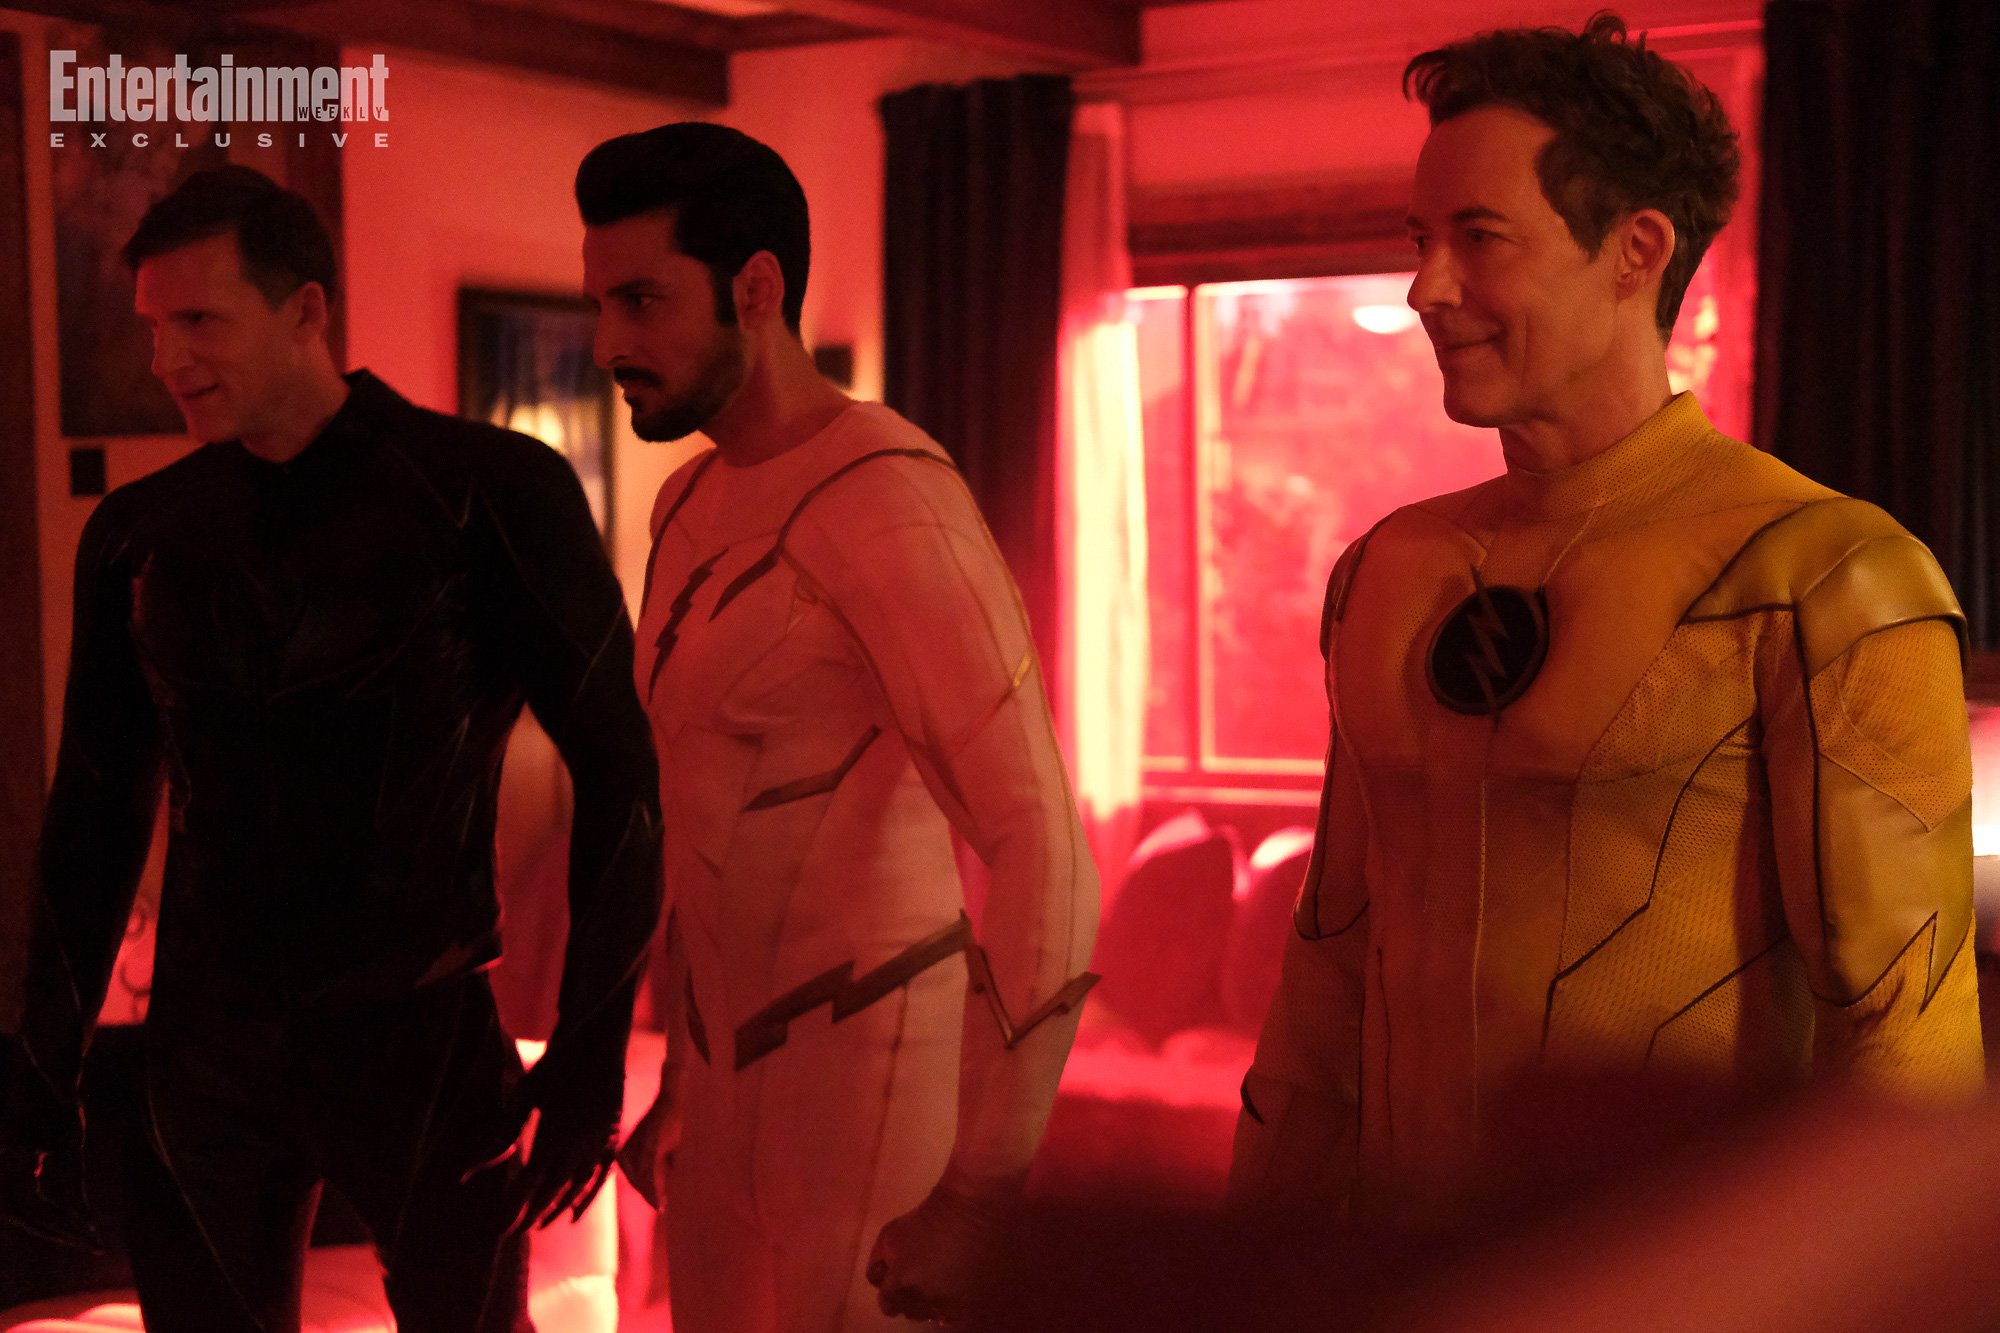 Série The Flash terá finale dividido em quatro partes - NerdBunker